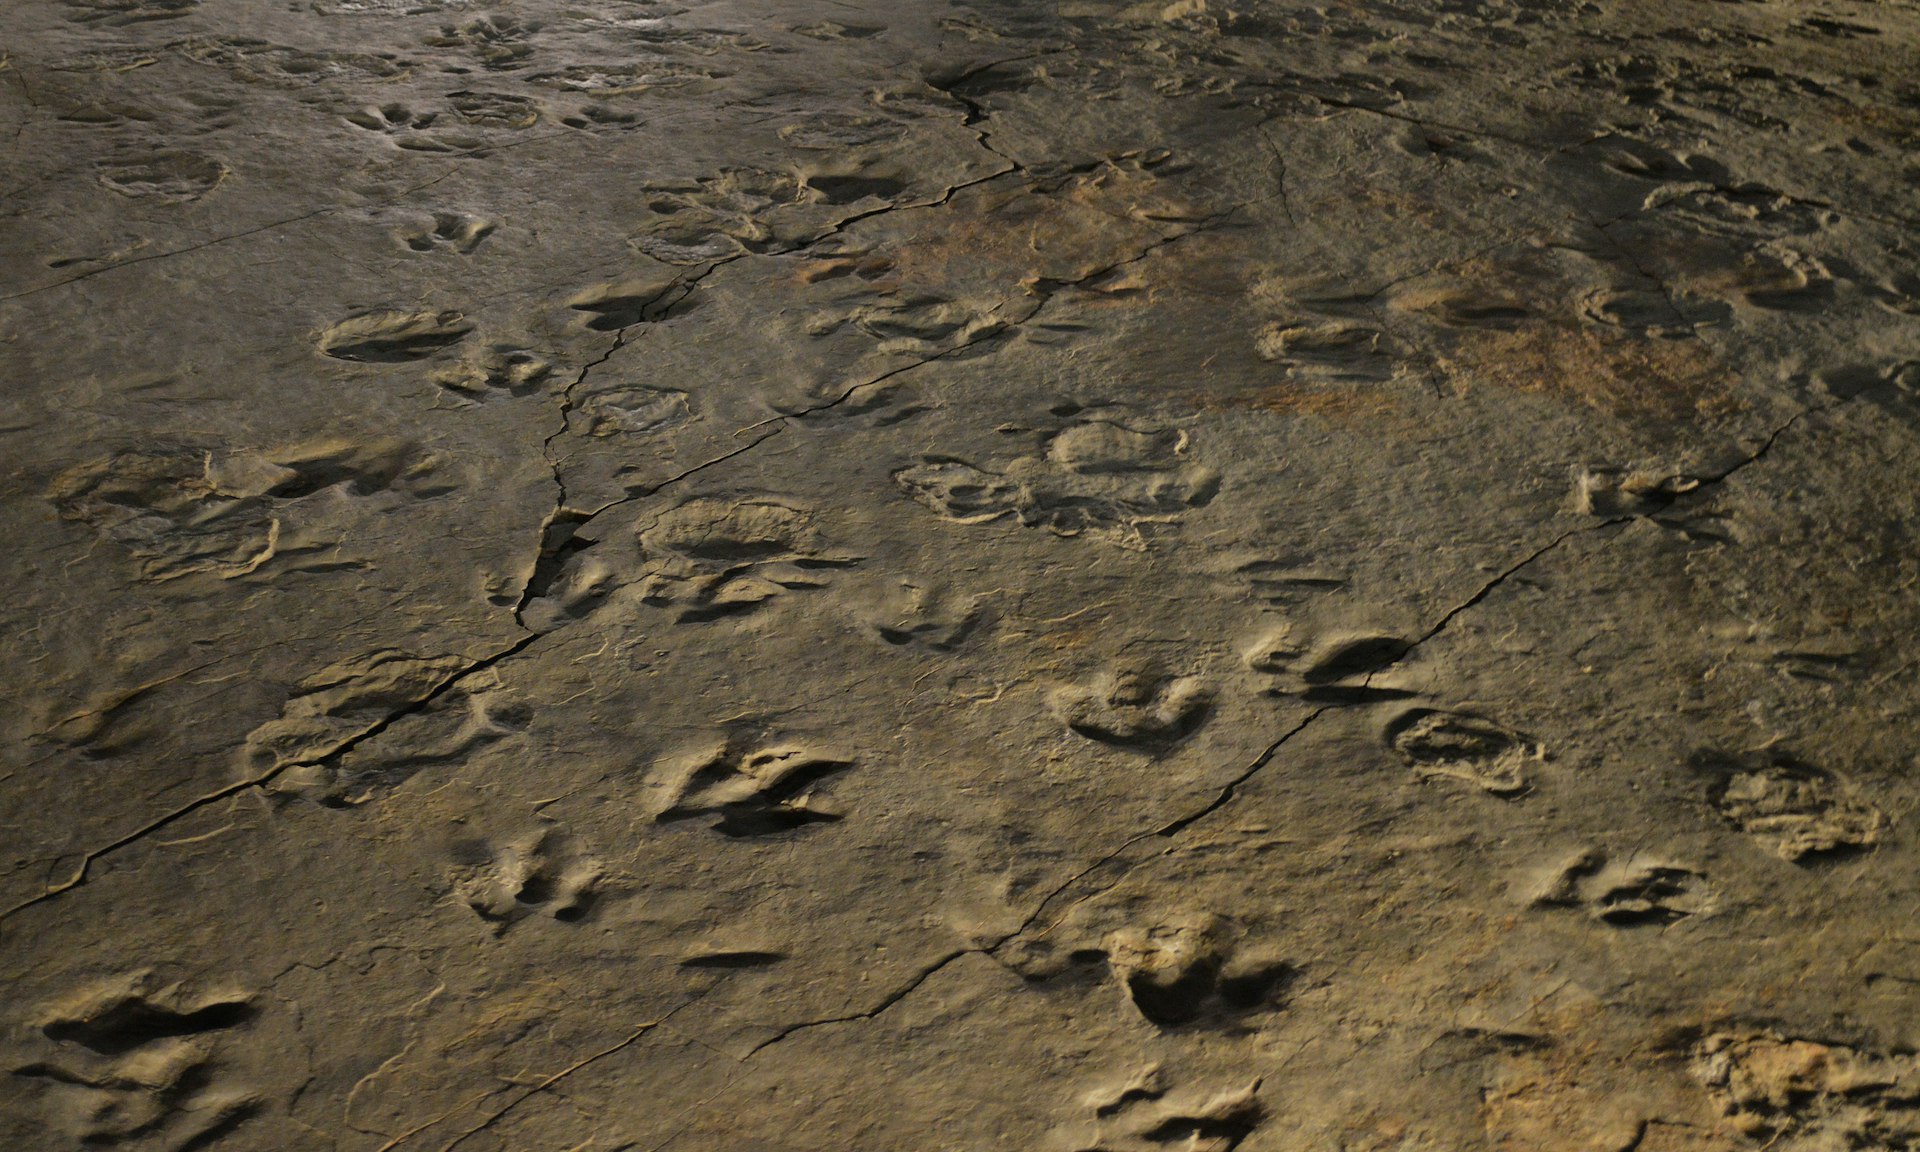 Field of Dinosaur Tracks